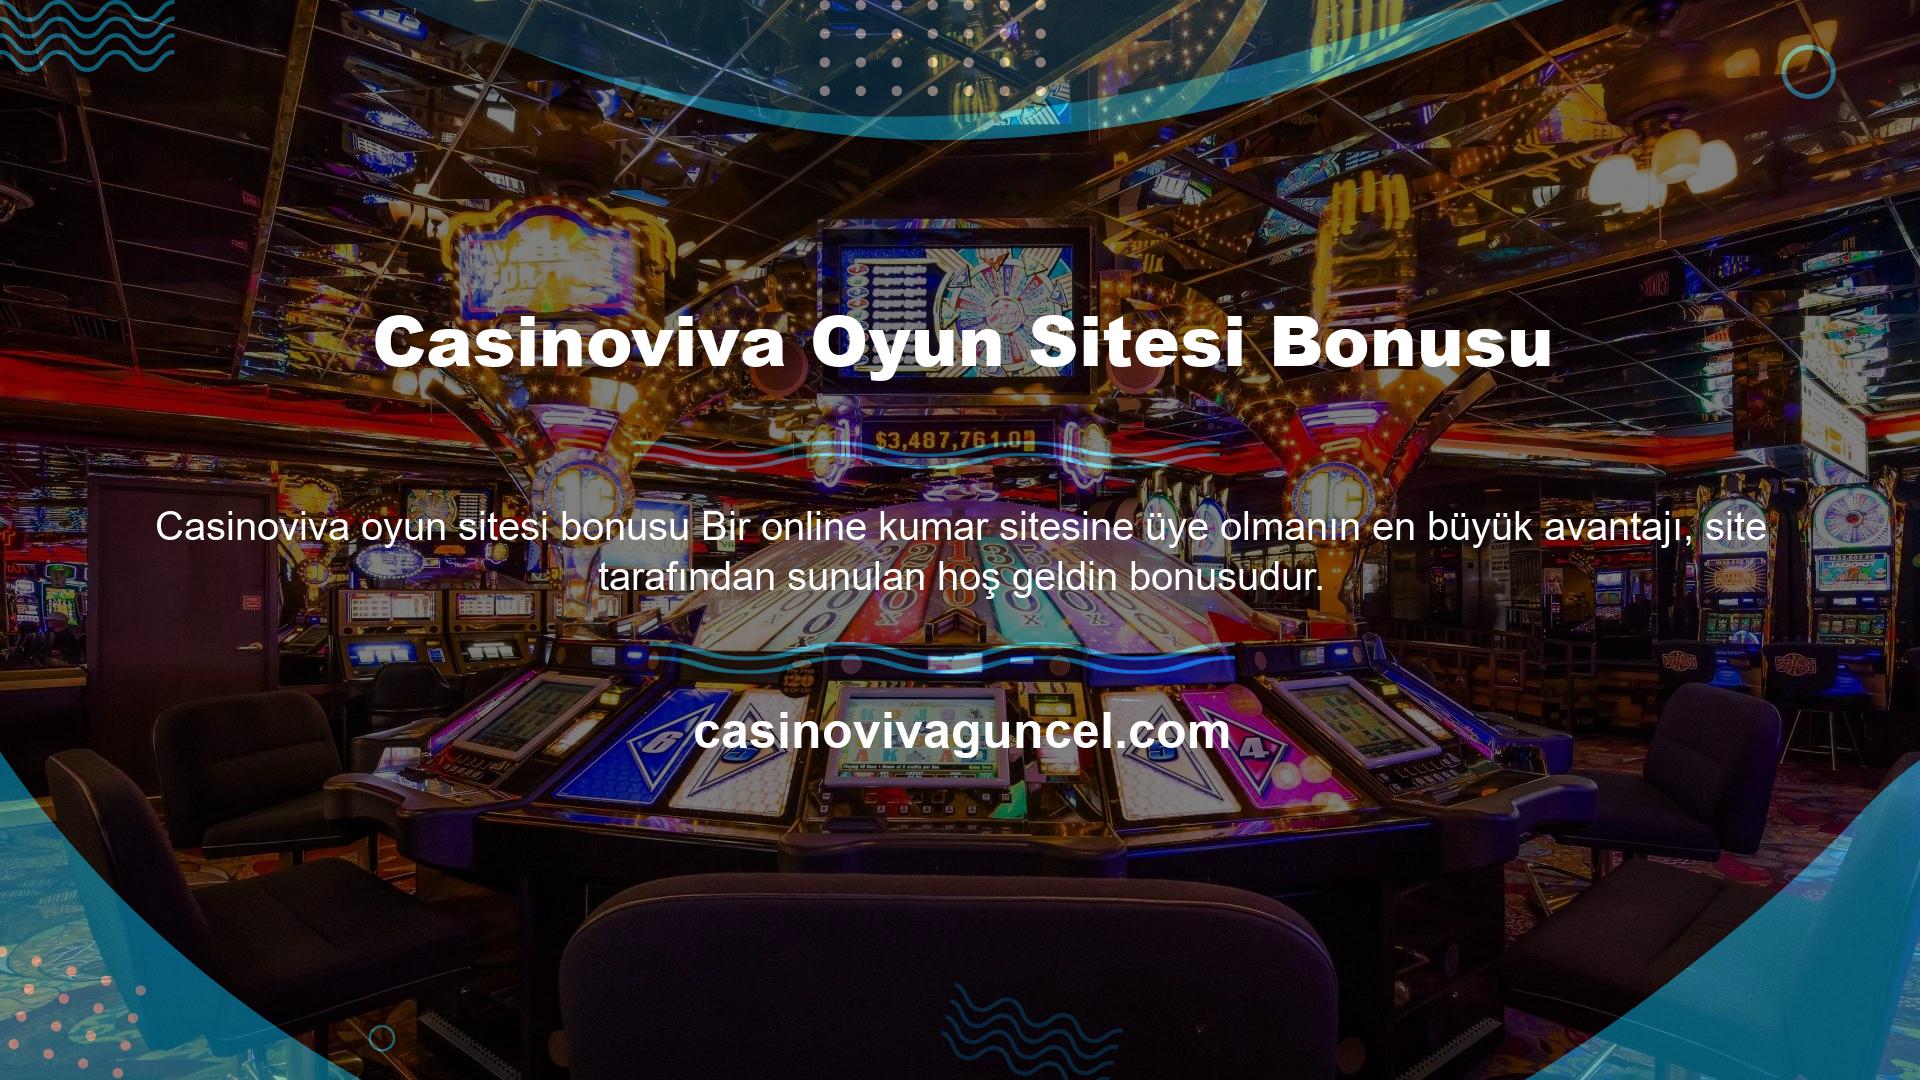 Casinoviva Oyun Sitesi Bonusu Günümüzde en amatör siteler bile yeni üyelerin ilgisini çekmek için cazip bonuslar sunmaktadır